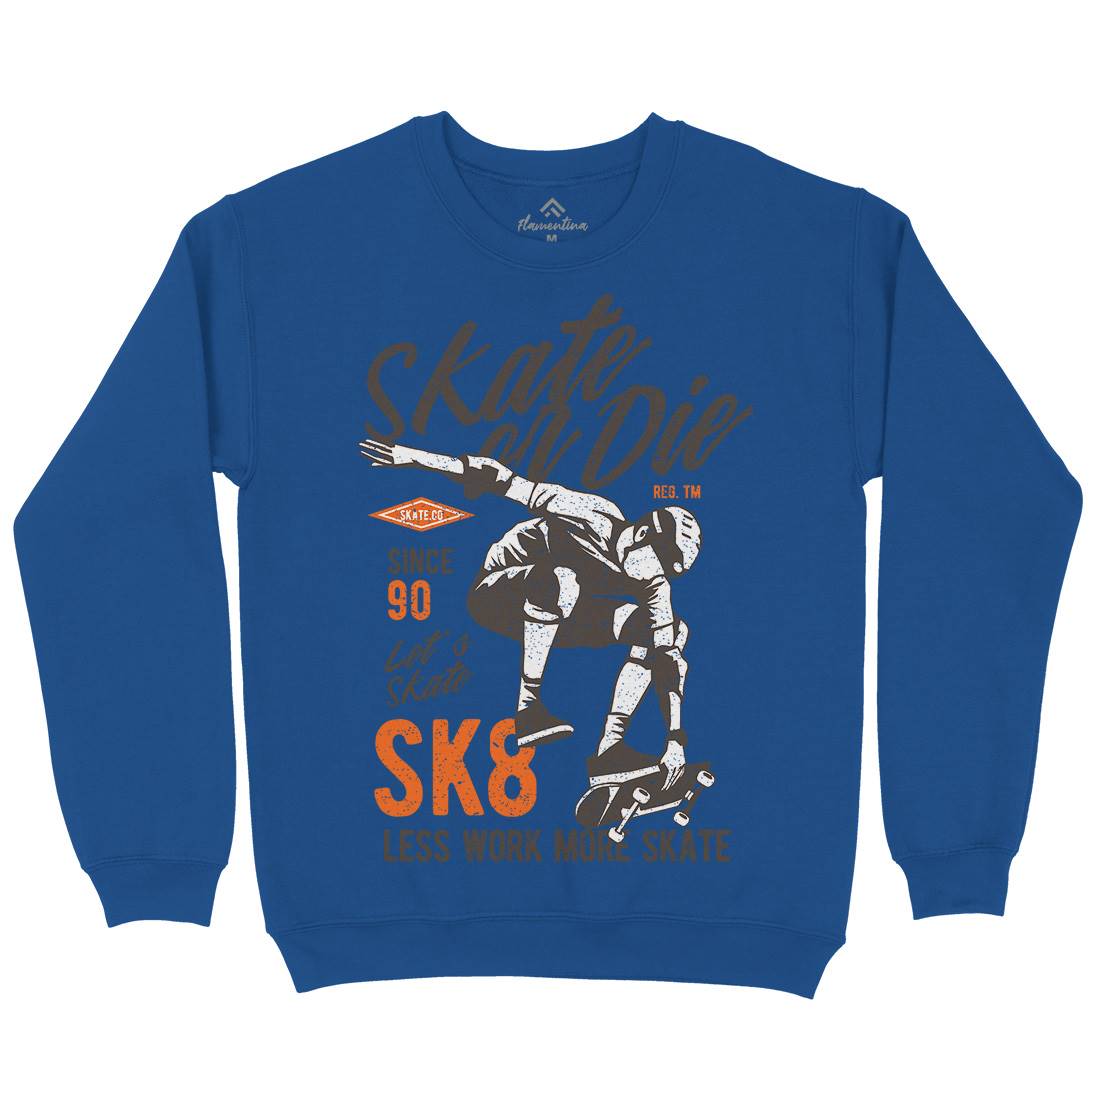 Or Die Kids Crew Neck Sweatshirt Skate A754